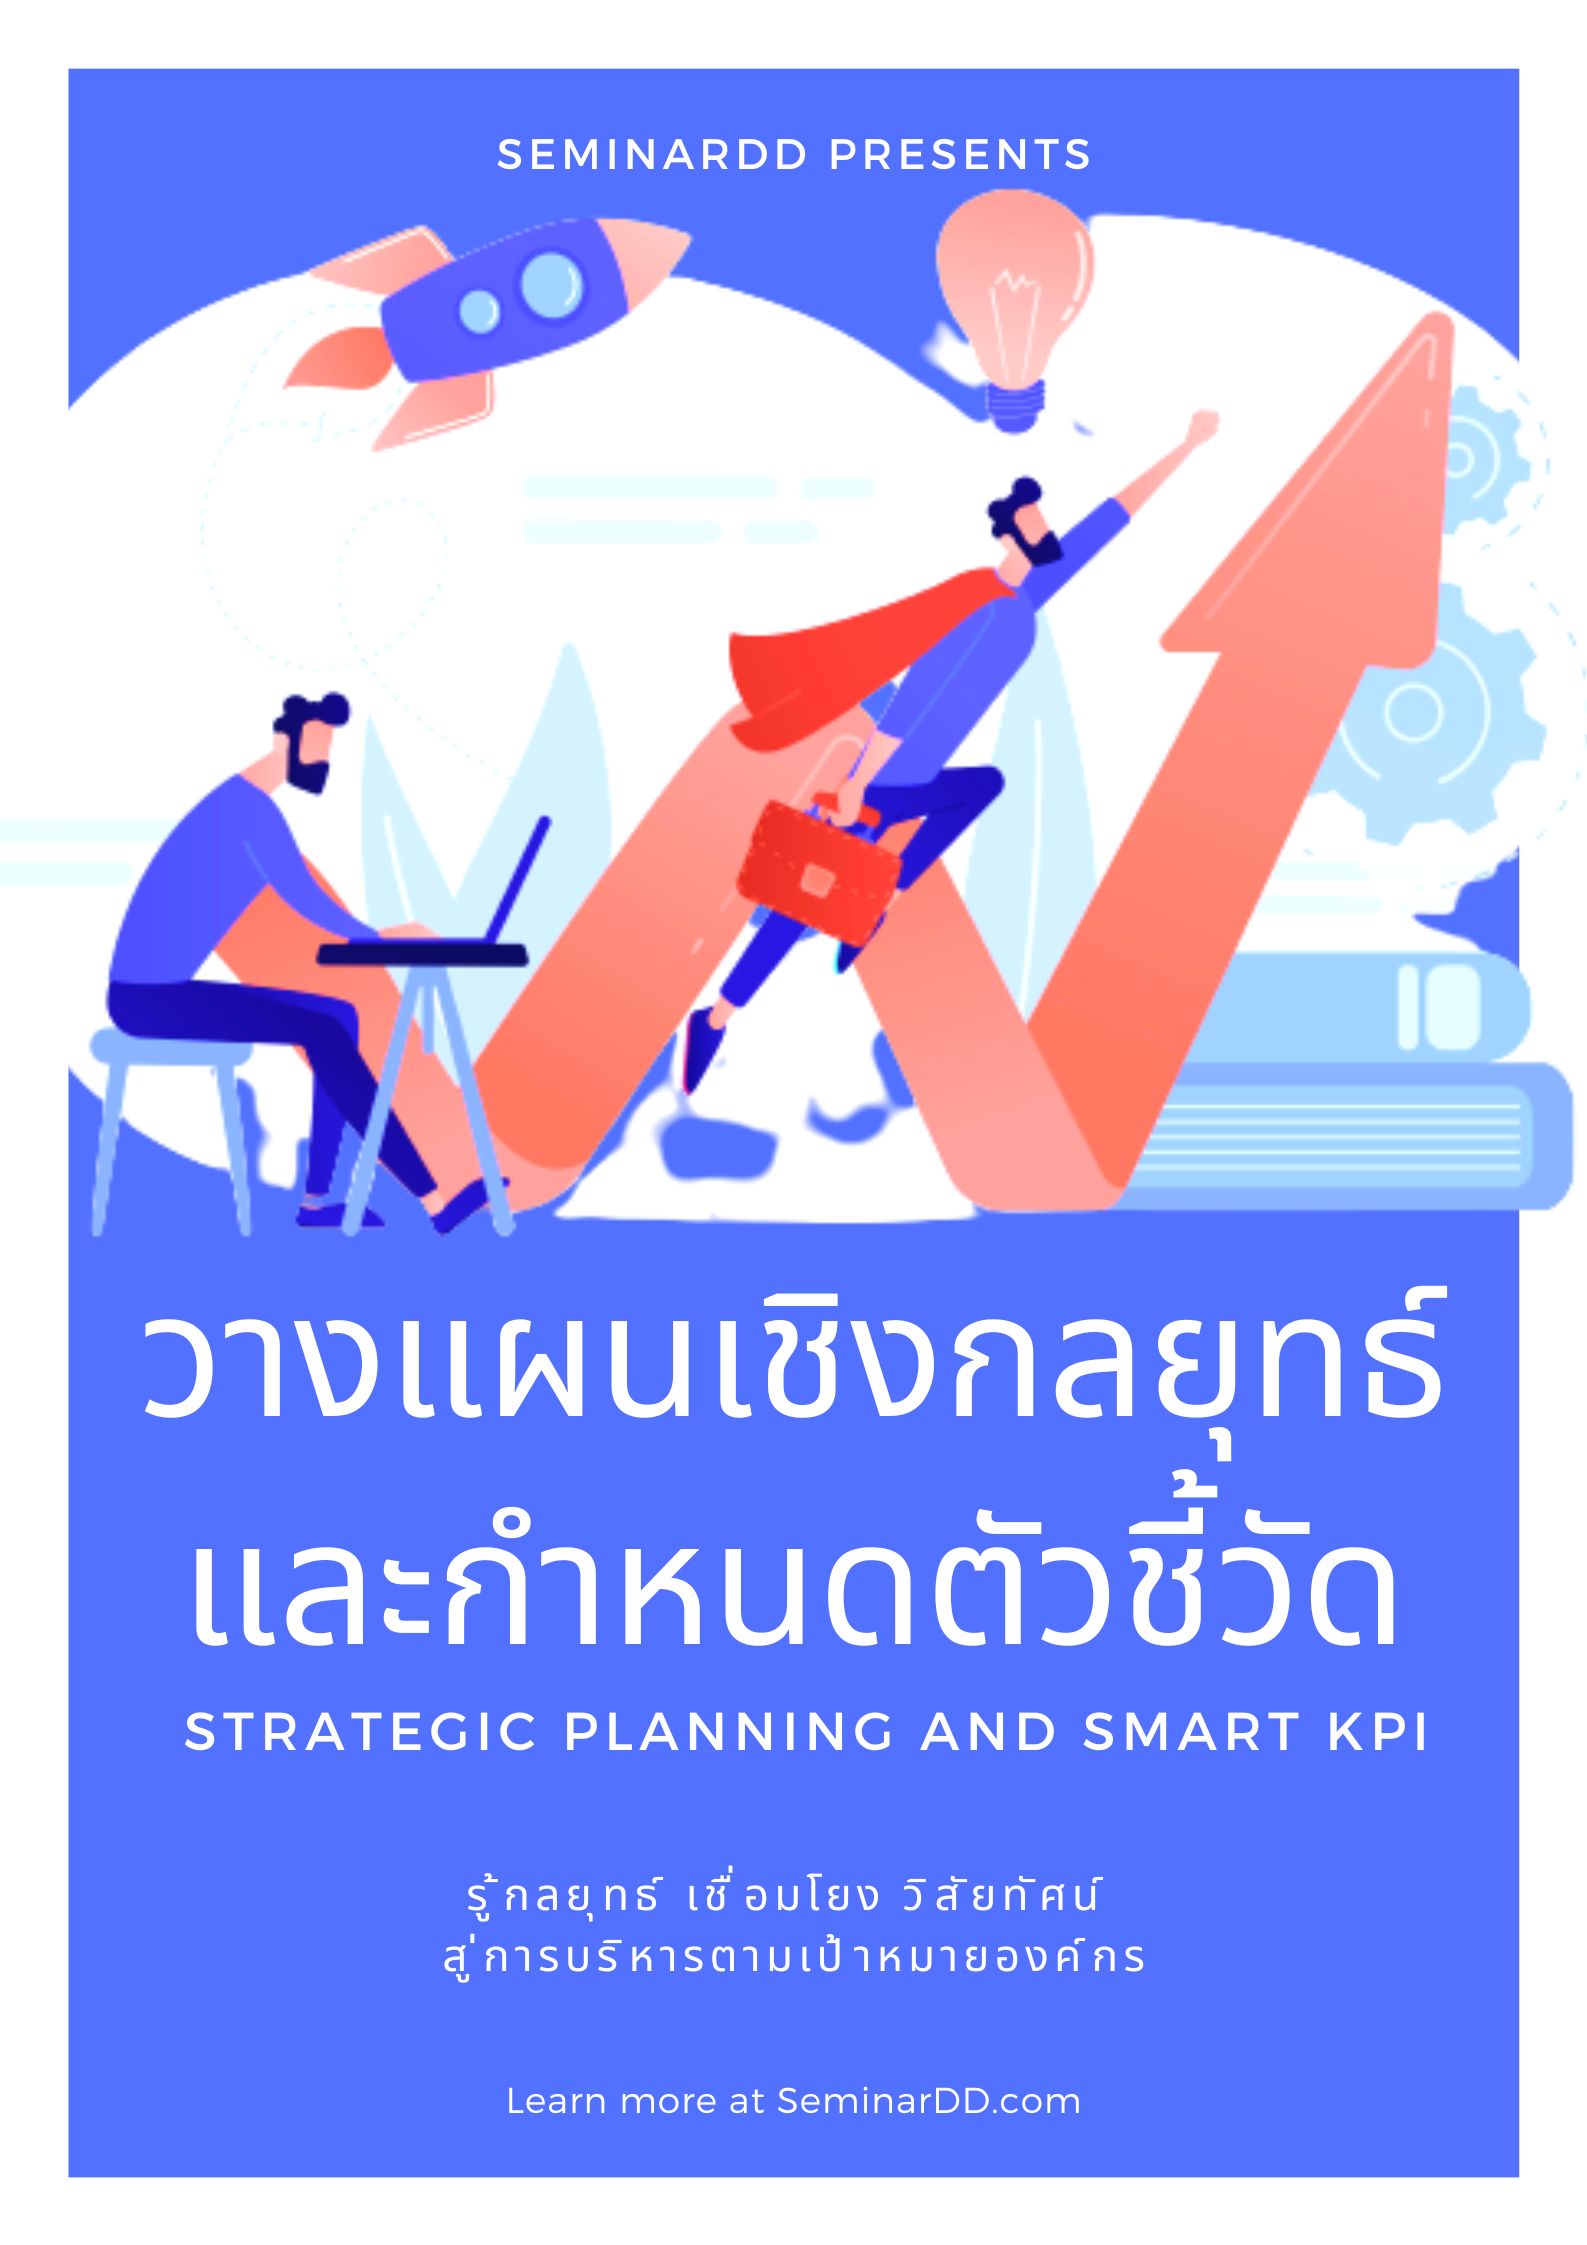 หลักสูตรอบรม การวางแผนเชิงกลยุทธ์และกำหนดตัวชี้วัด SMART KPI (สัมมนาเชิงปฏิบัติการ) (Strategic Planning and SMART KPI)